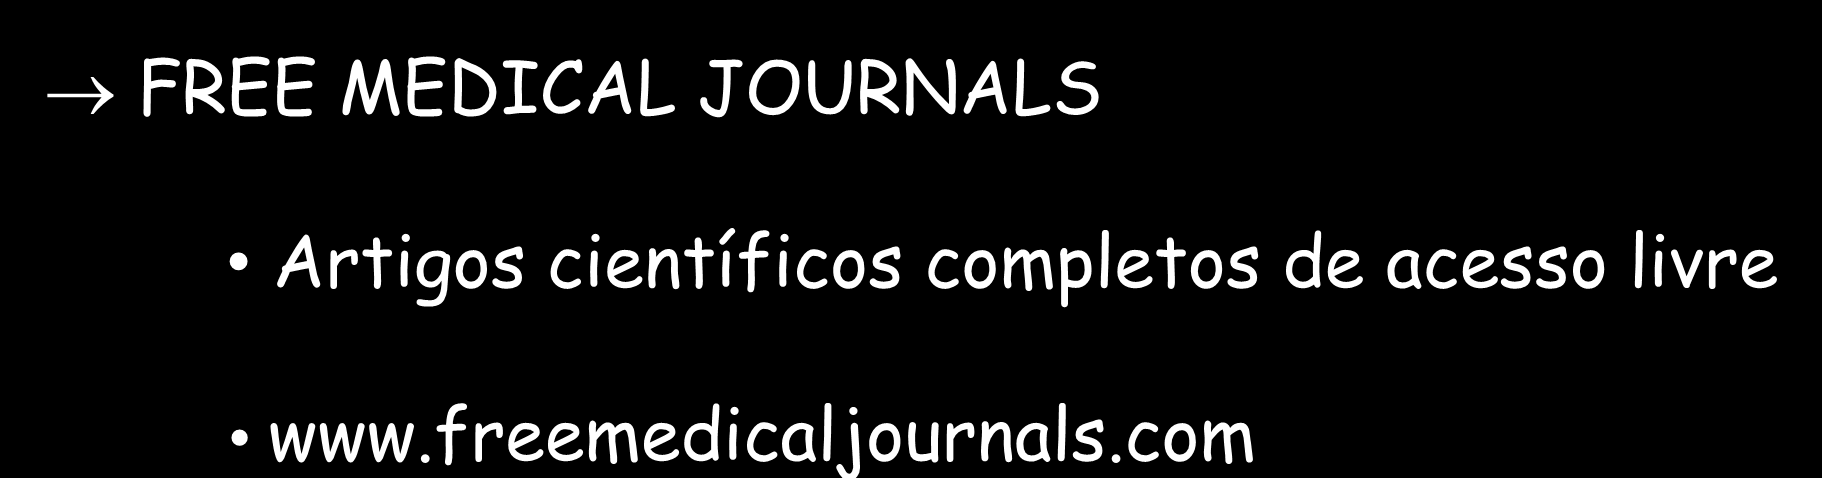 PESQUISA NA INTERNET FREE MEDICAL JOURNALS Artigos científicos